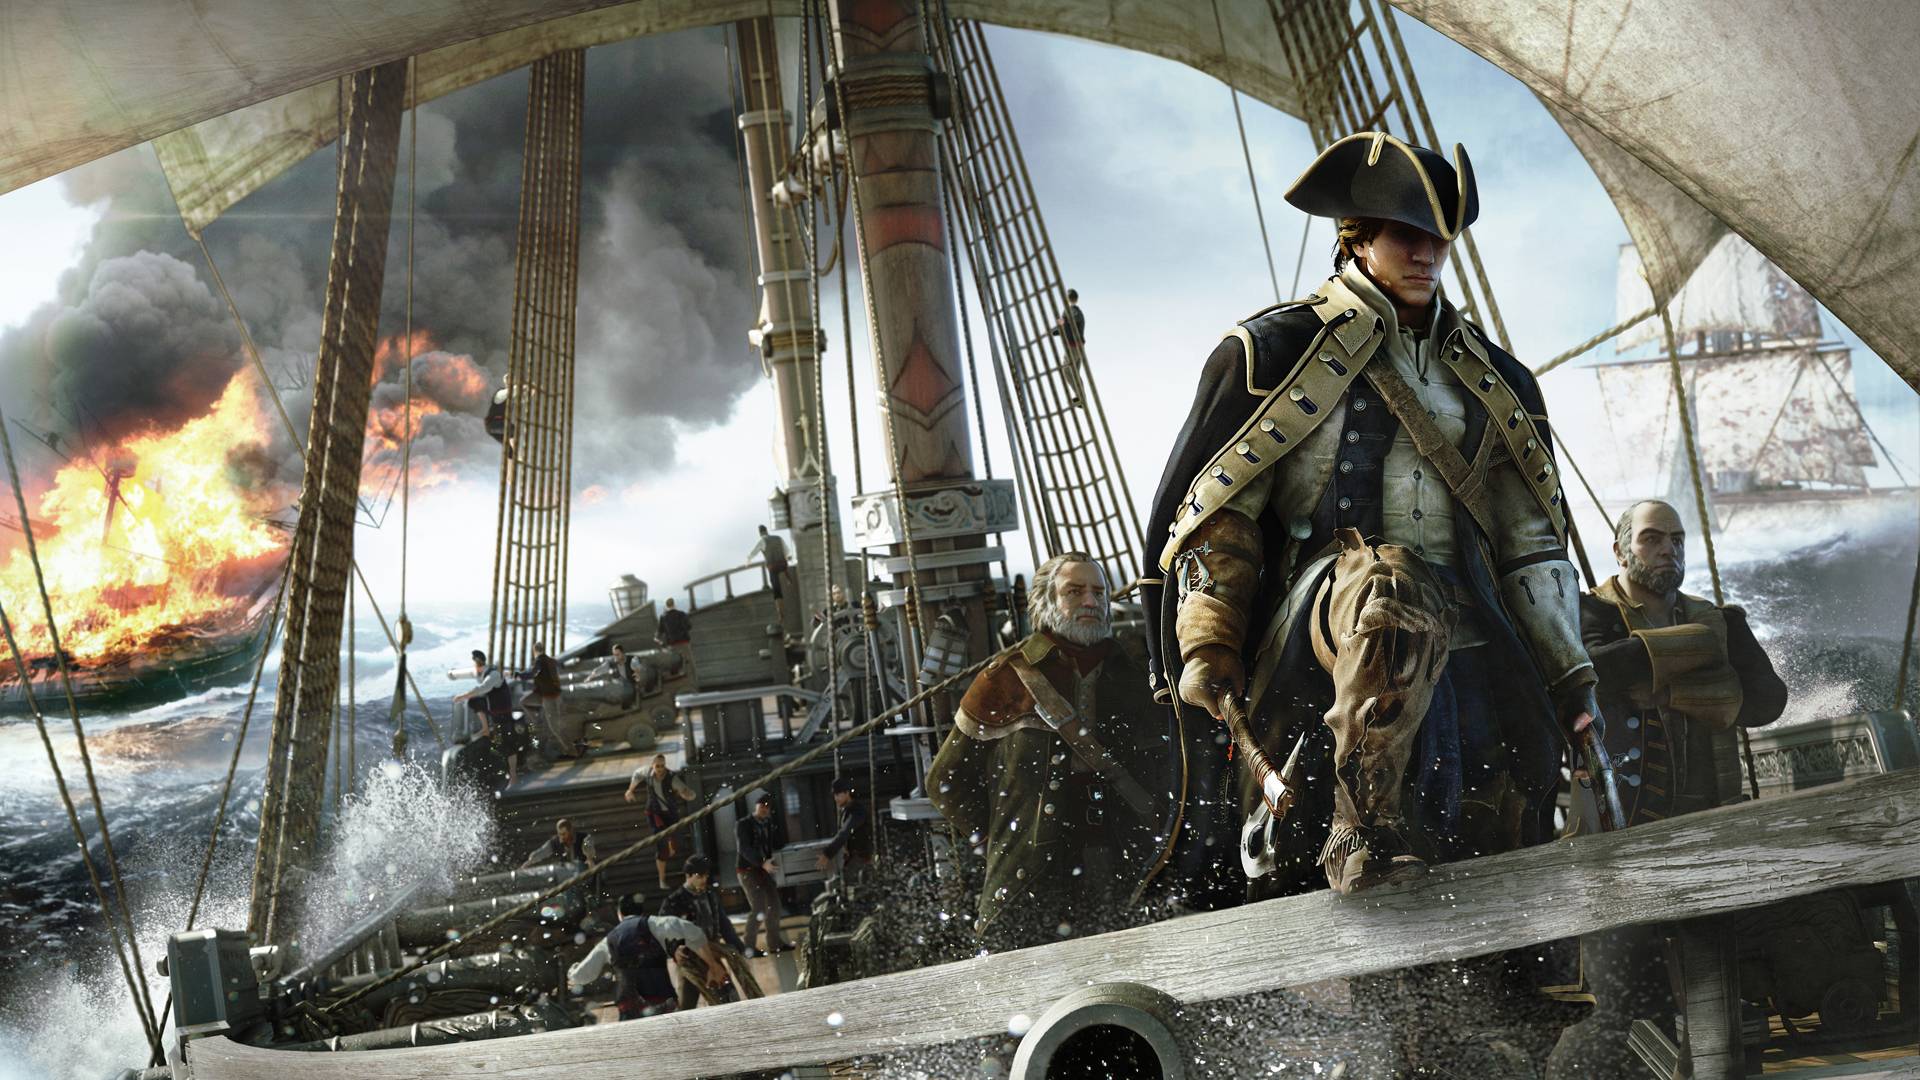 Amazoncom: Assassins Creed III: Xbox 360: Ubisoft: Video